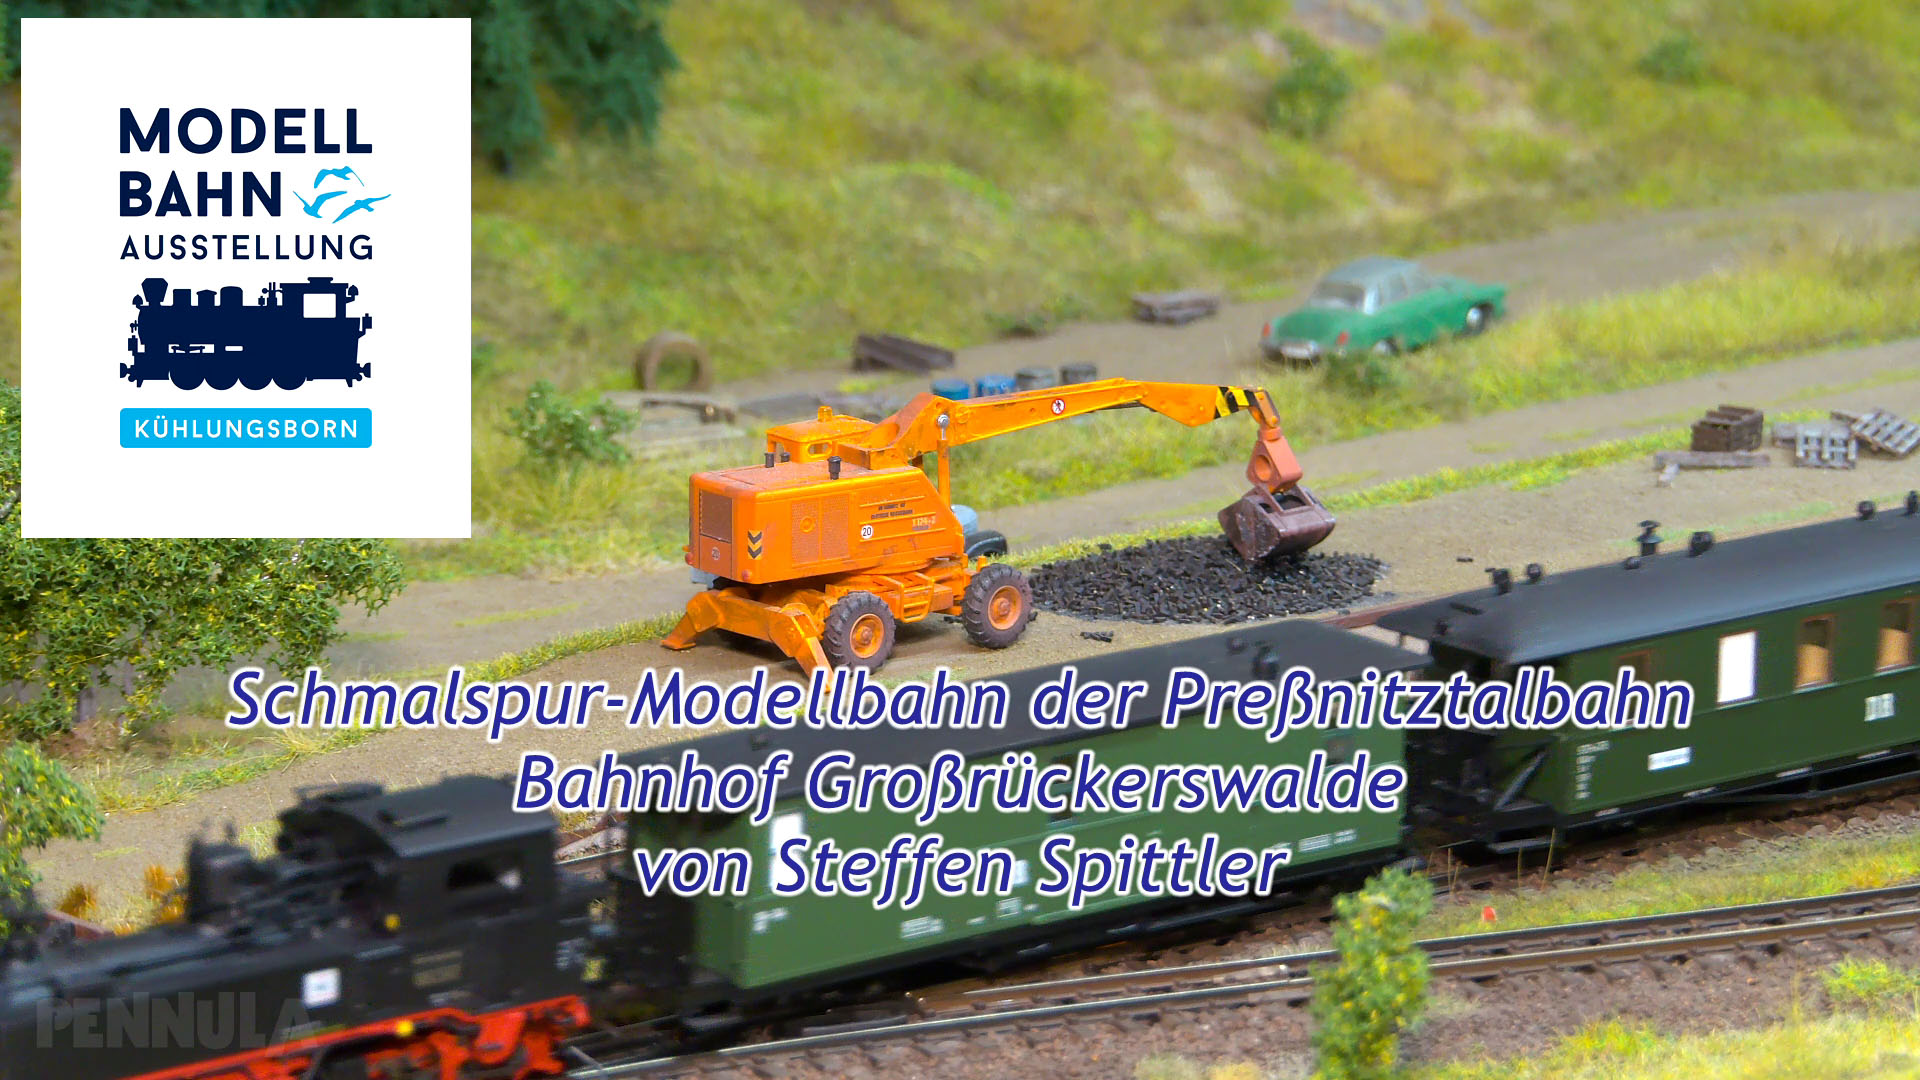 Schmalspur-Modellbahn der Preßnitztalbahn - Bahnhof Großrückerswalde von Steffen Spittler